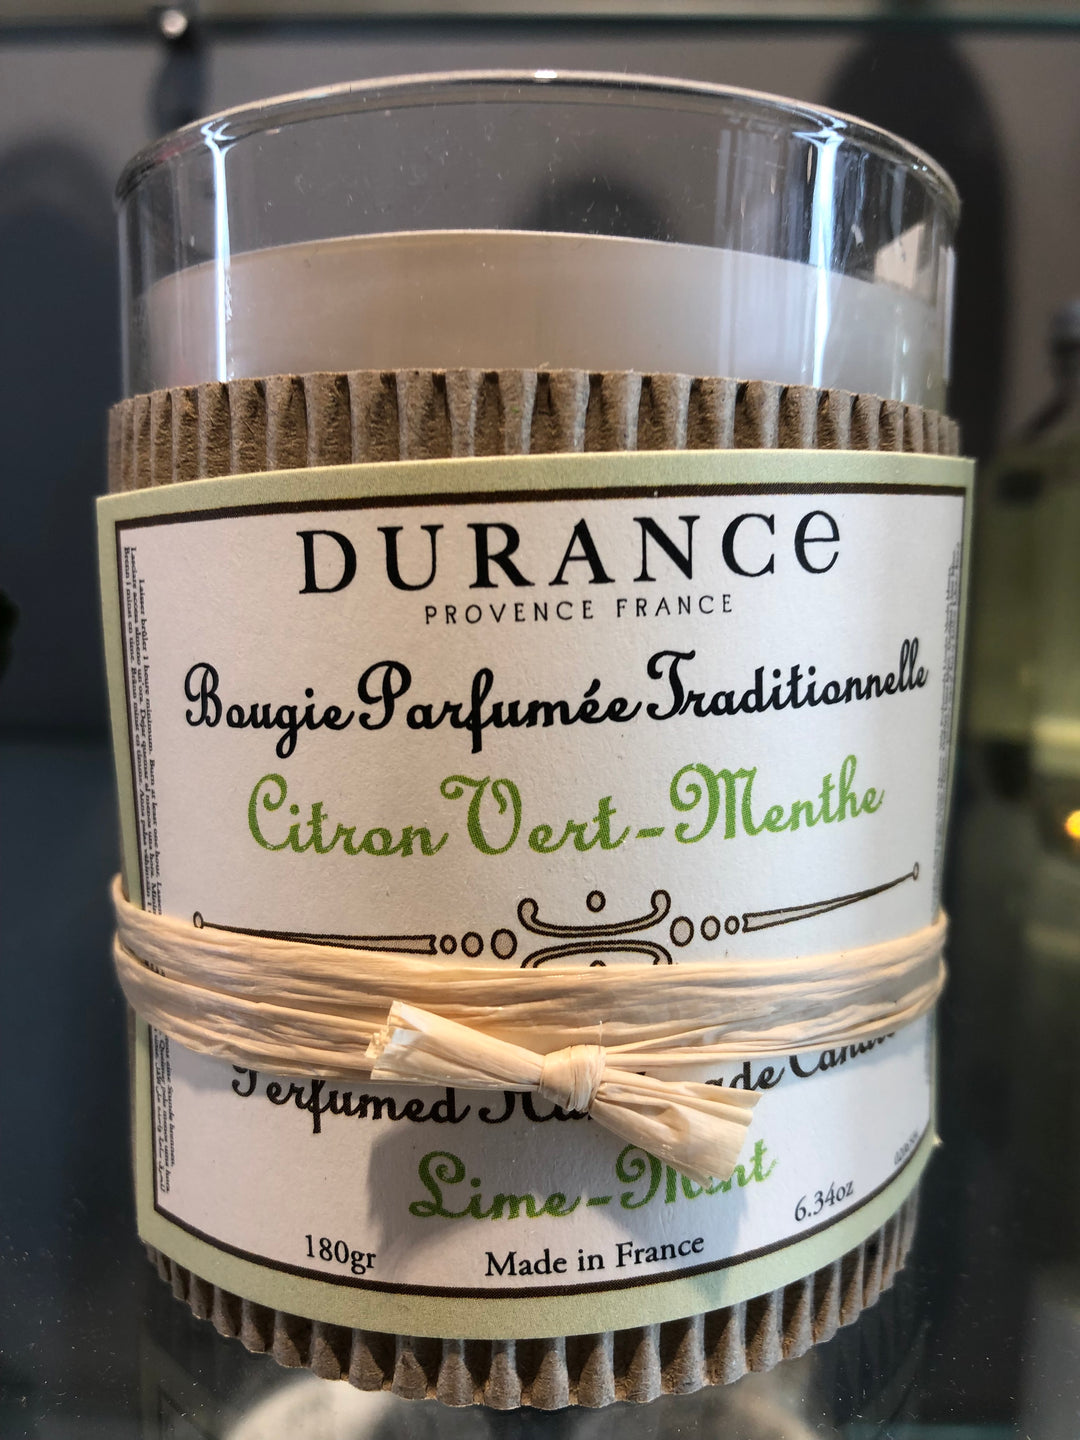 Duftkerze Citron Vert-Menthe - Lime Mint von Durance